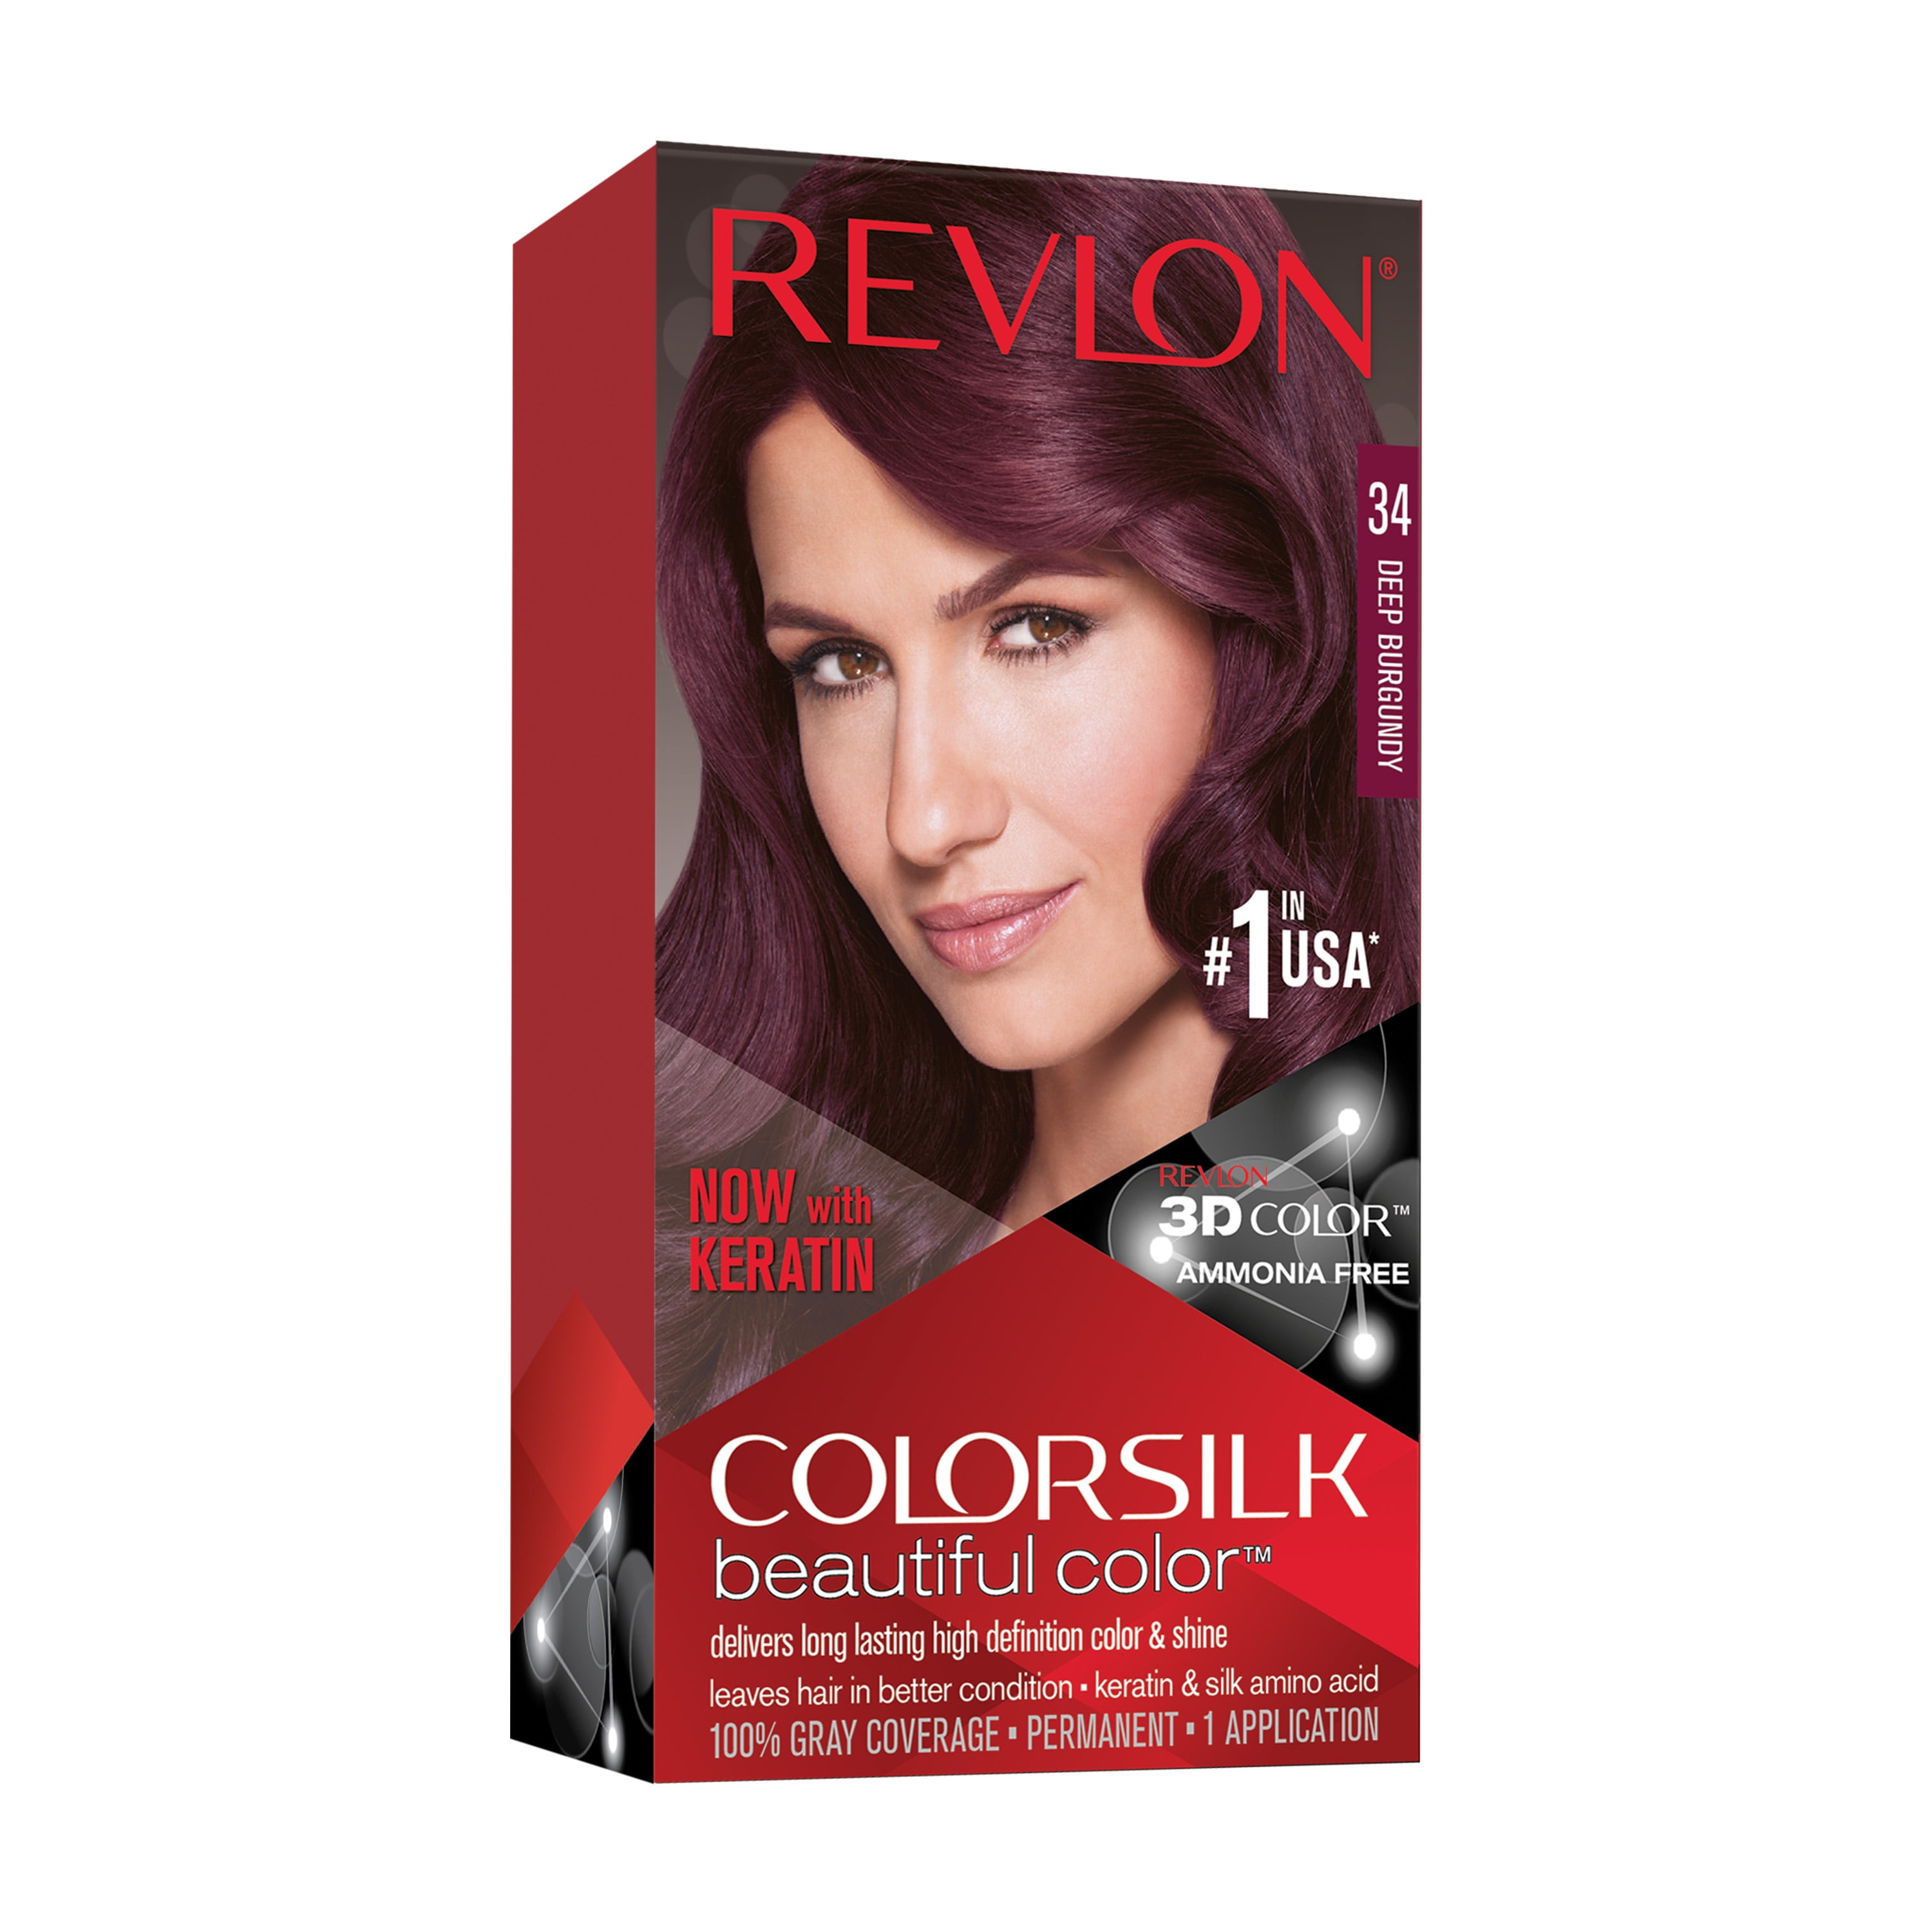 Revlon ColorSilk Beautiful Color Permanent Hair Color, 34 Deep Burgundy, 1  Count 